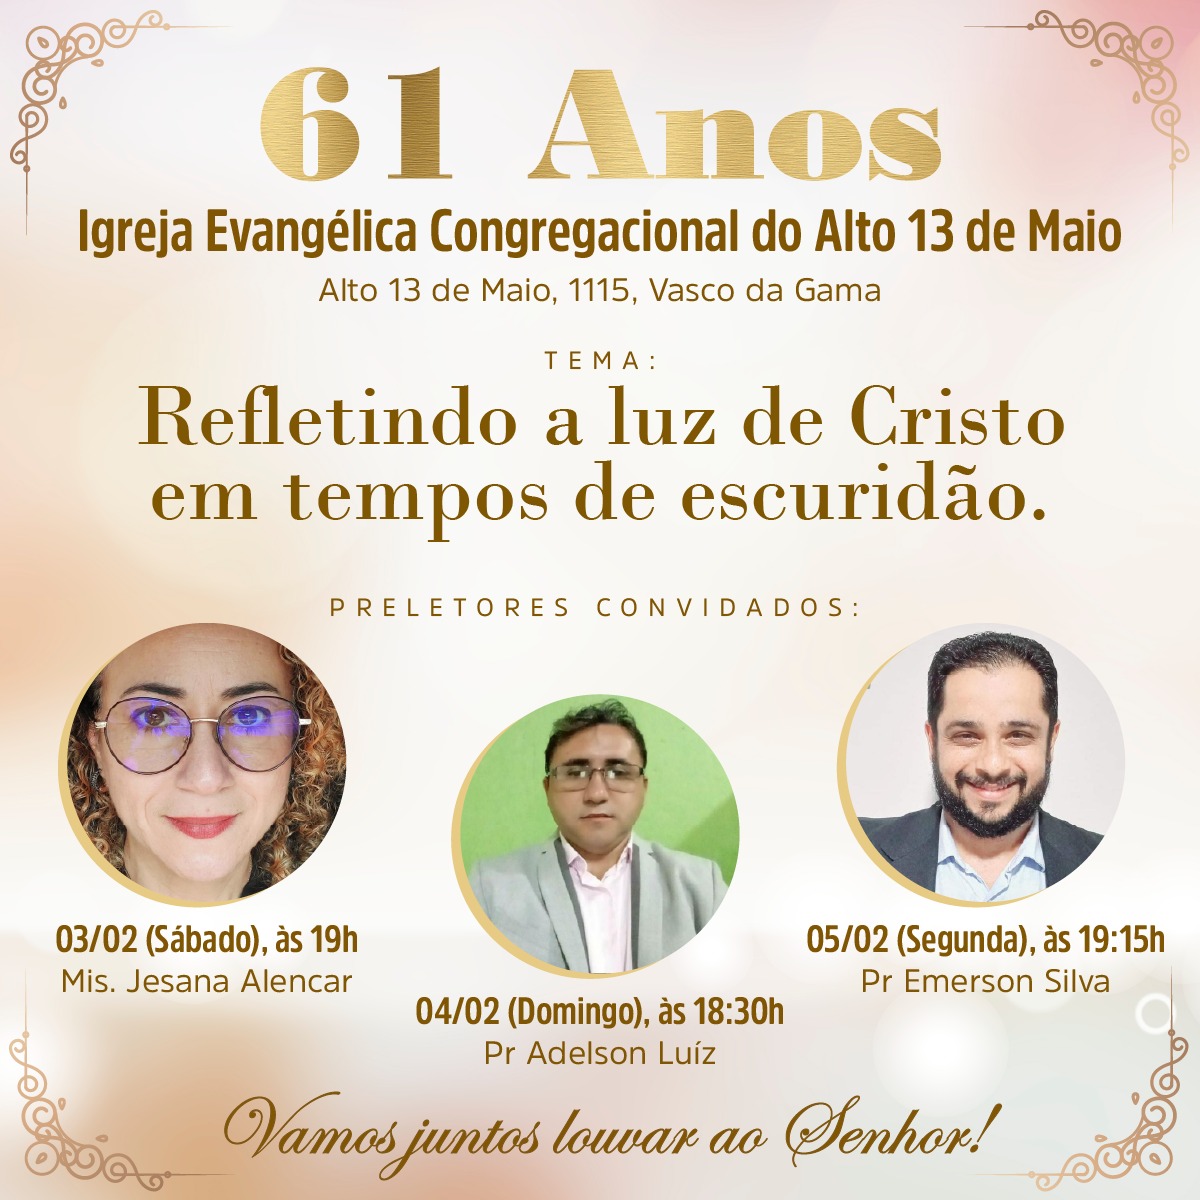 61 ANOS DA IGREJA CONGREGACIONAL DO ALTO 13 DE MAIO.